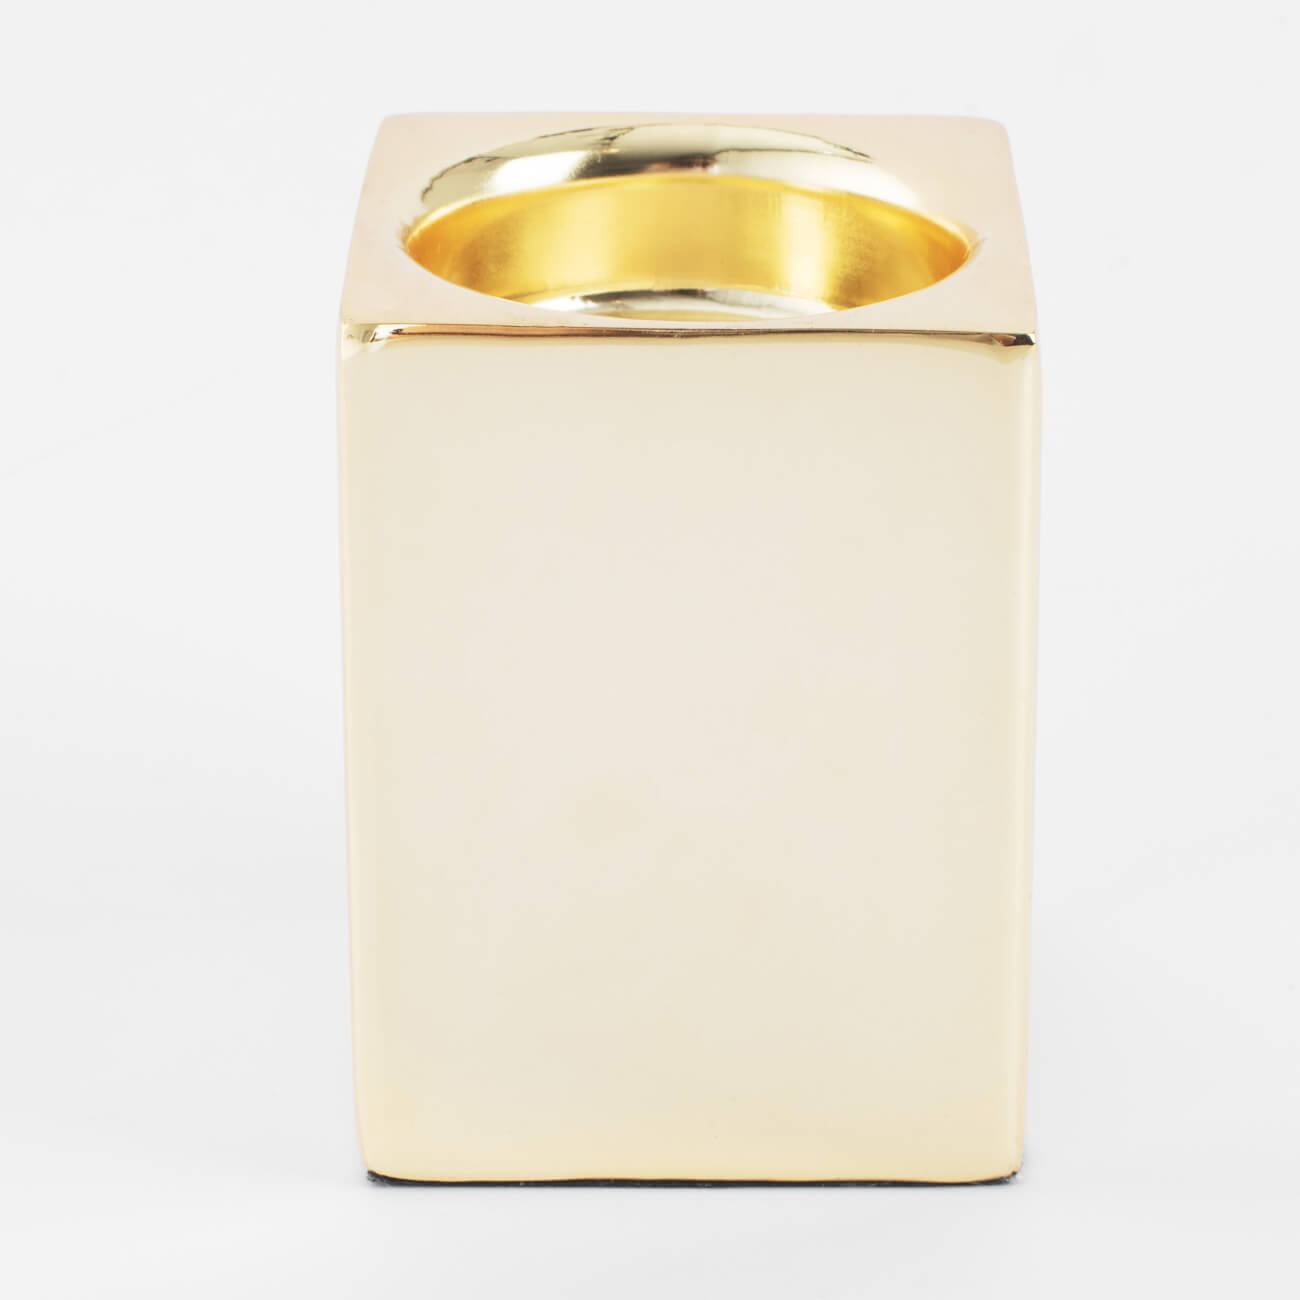 Подсвечник, 7 см, для чайной свечи, металл, золотистый, Fantastic gold подсвечник бейзик 18 см 2 штуки